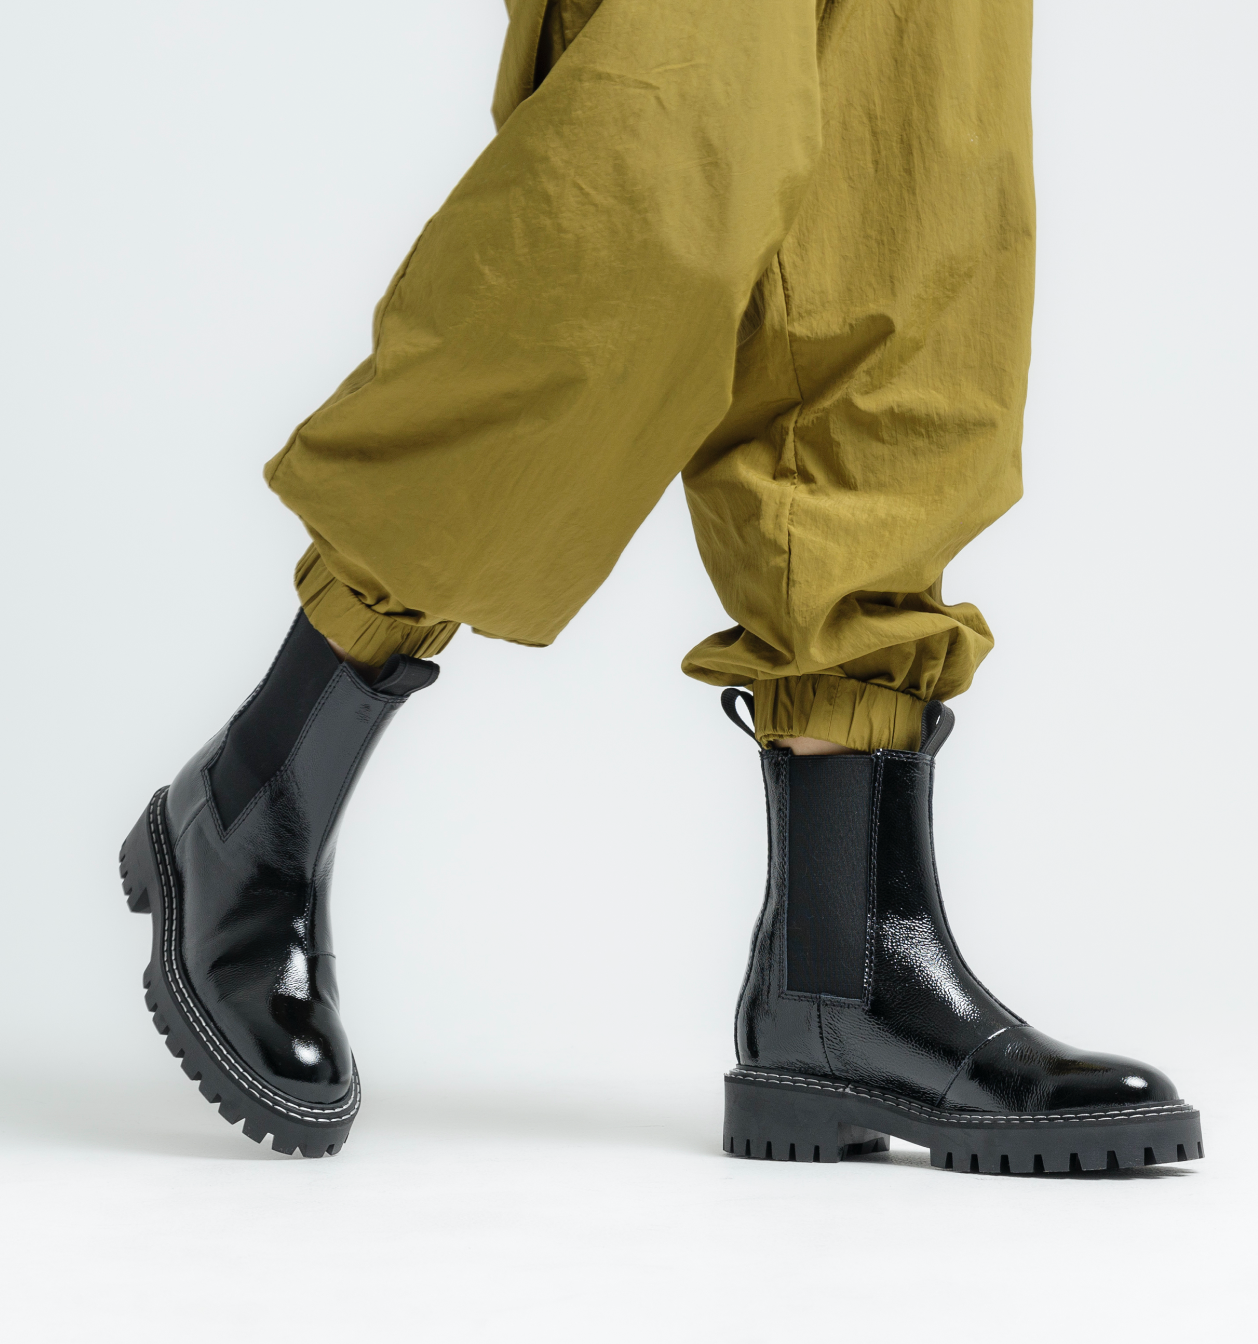 Daze Black Patent Leather Chelsea Boots LAST1677 - 11